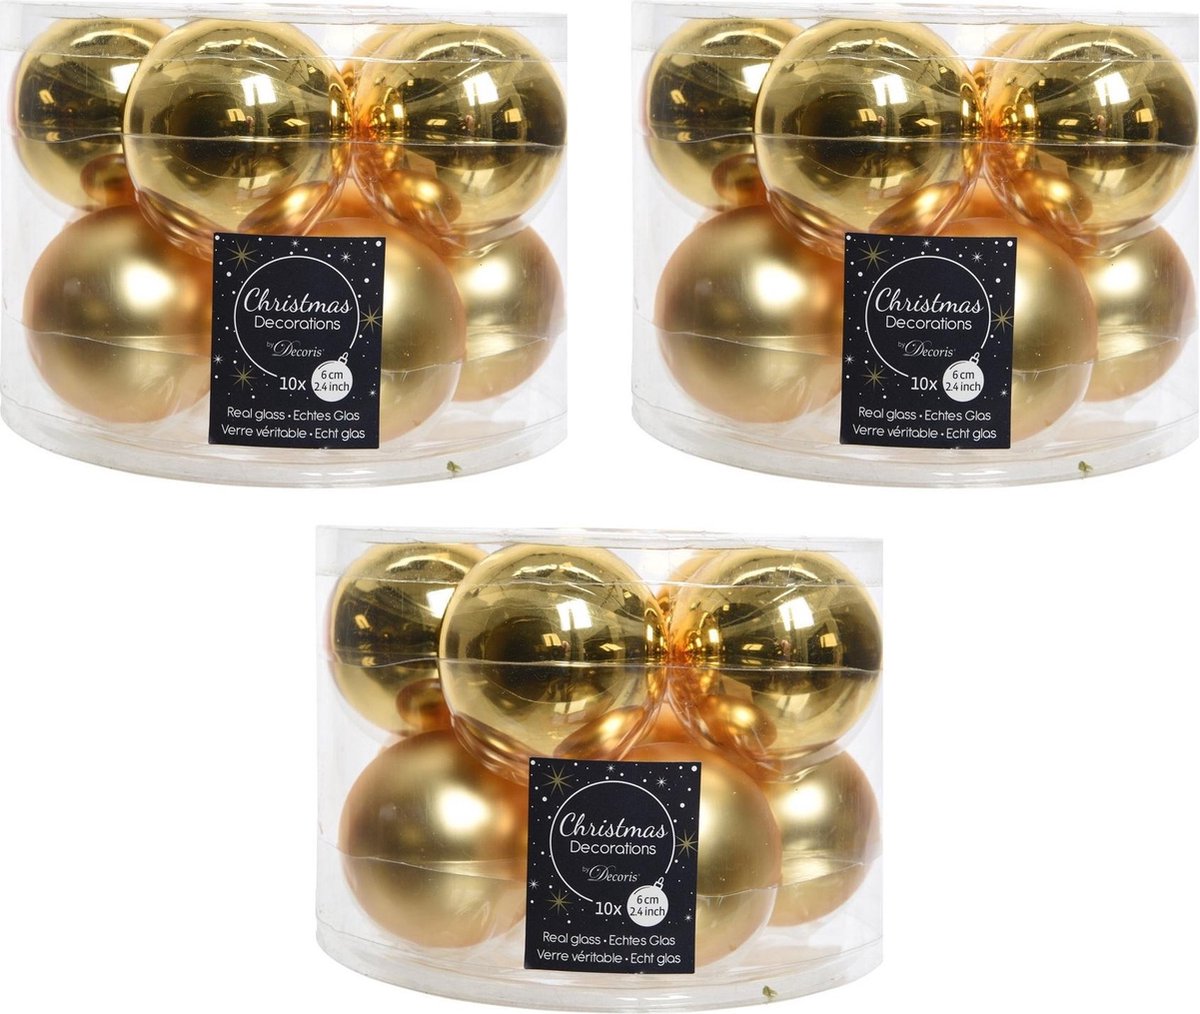 30x Gouden glazen kerstballen 6 cm - glans en mat - Glans/glanzende - Kerstboomversiering goud